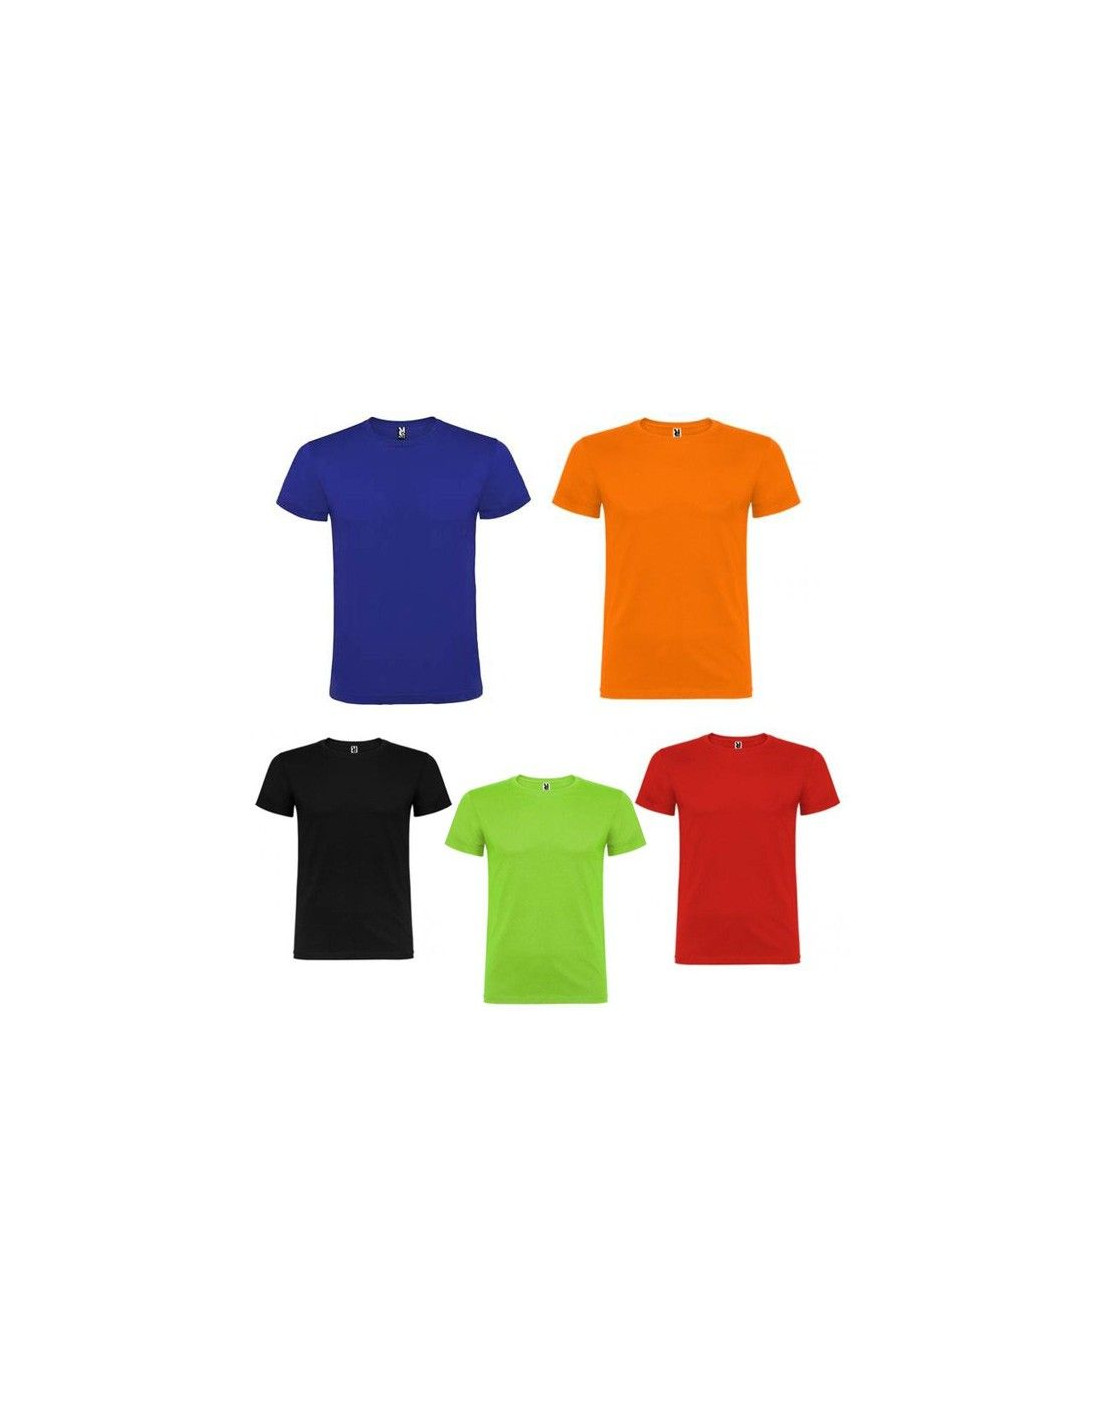 Camiseta color infantil - Comprar en Tienda Disfraces Bacanal